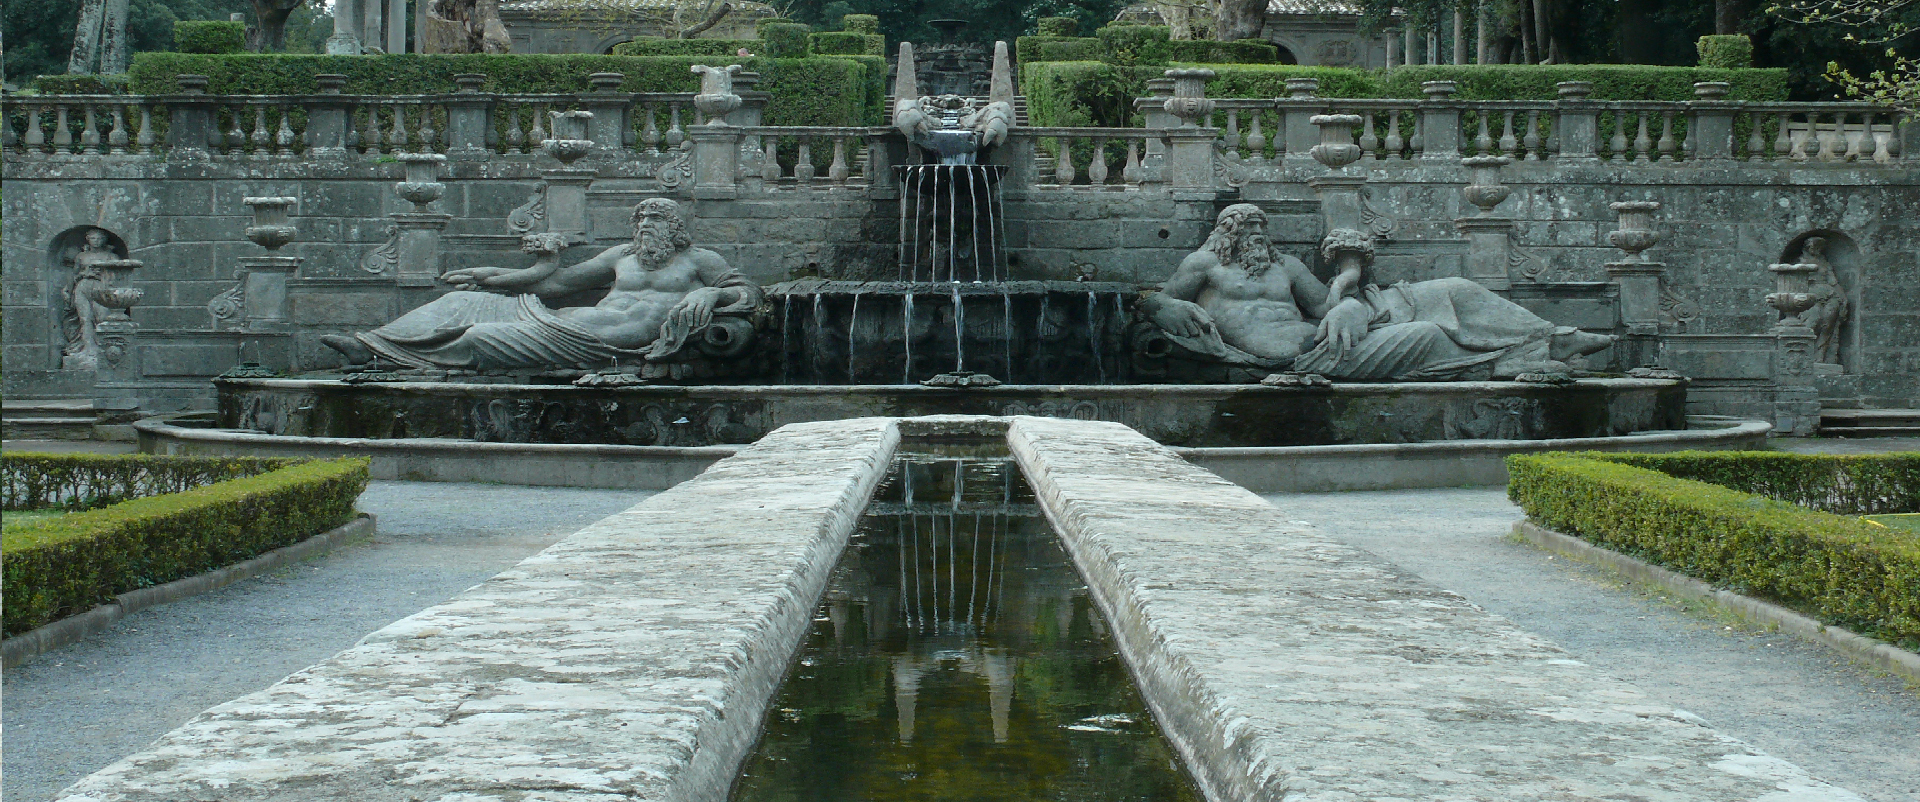 Villa Lante - VT - La Mensa del Cardinale e la Fontana dei Fiumi